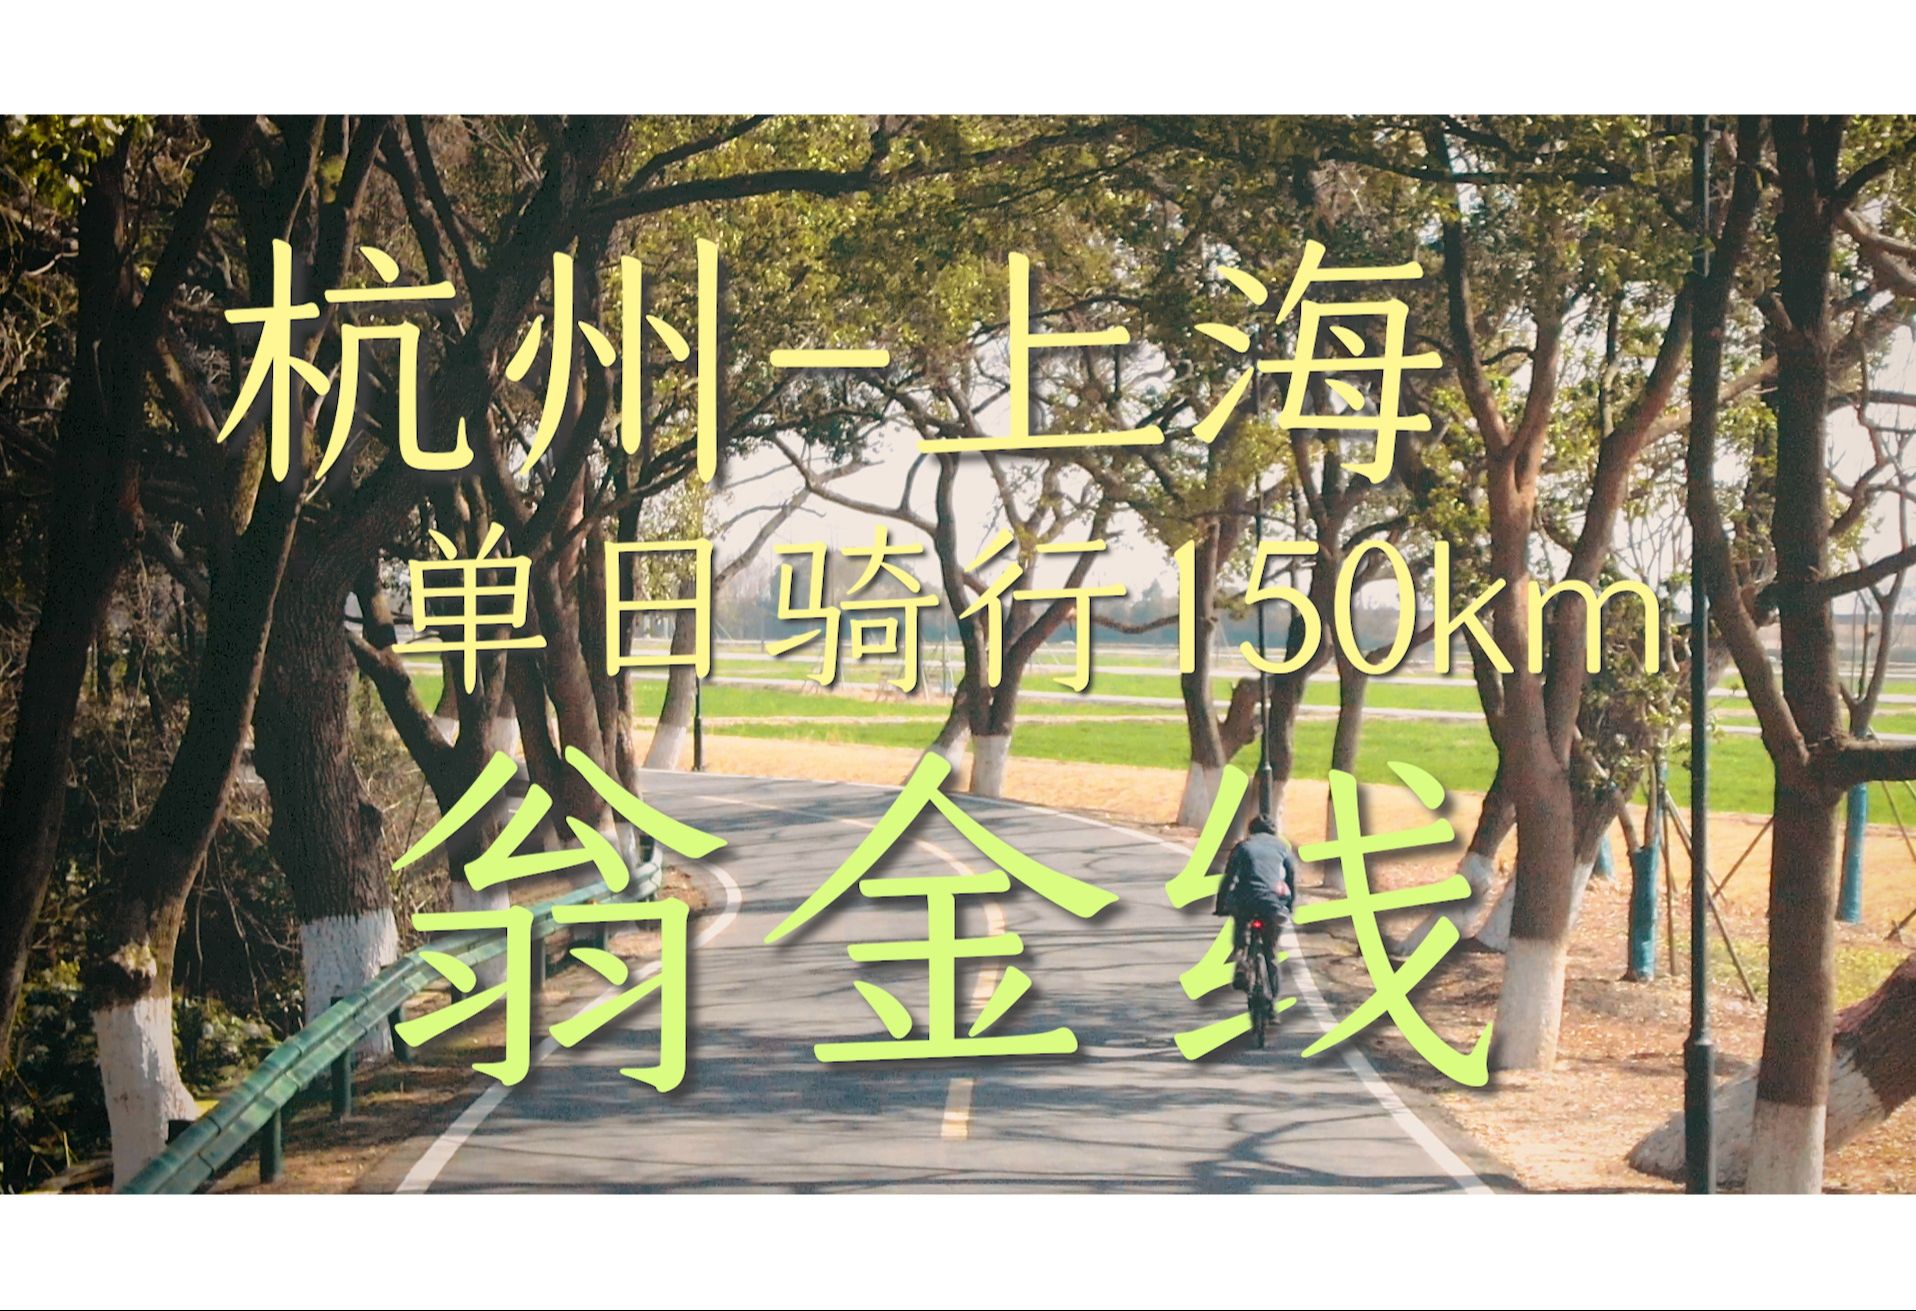 【含路书】上海杭州单日150km骑行 | 翁金线 | 老沪杭公路